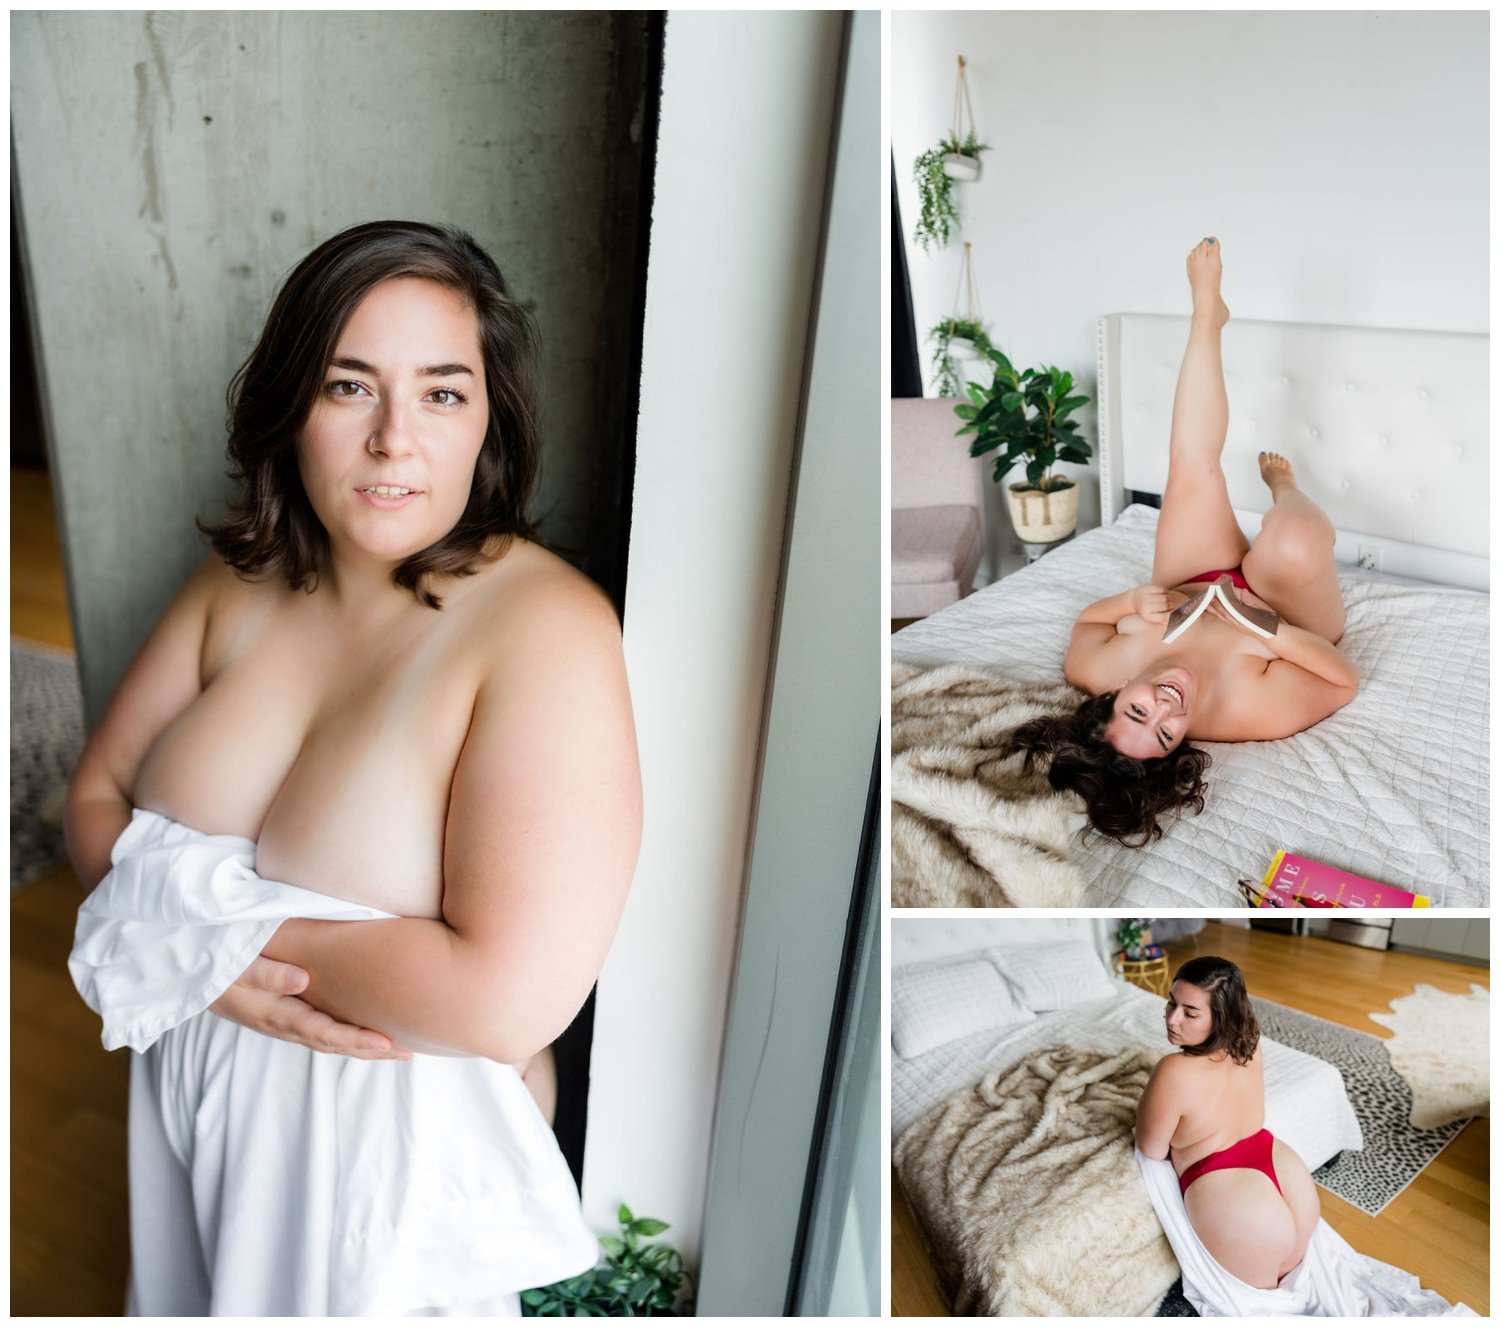 curvy-poses-for-boudoir-photos-phillyboudoir-photographers-1